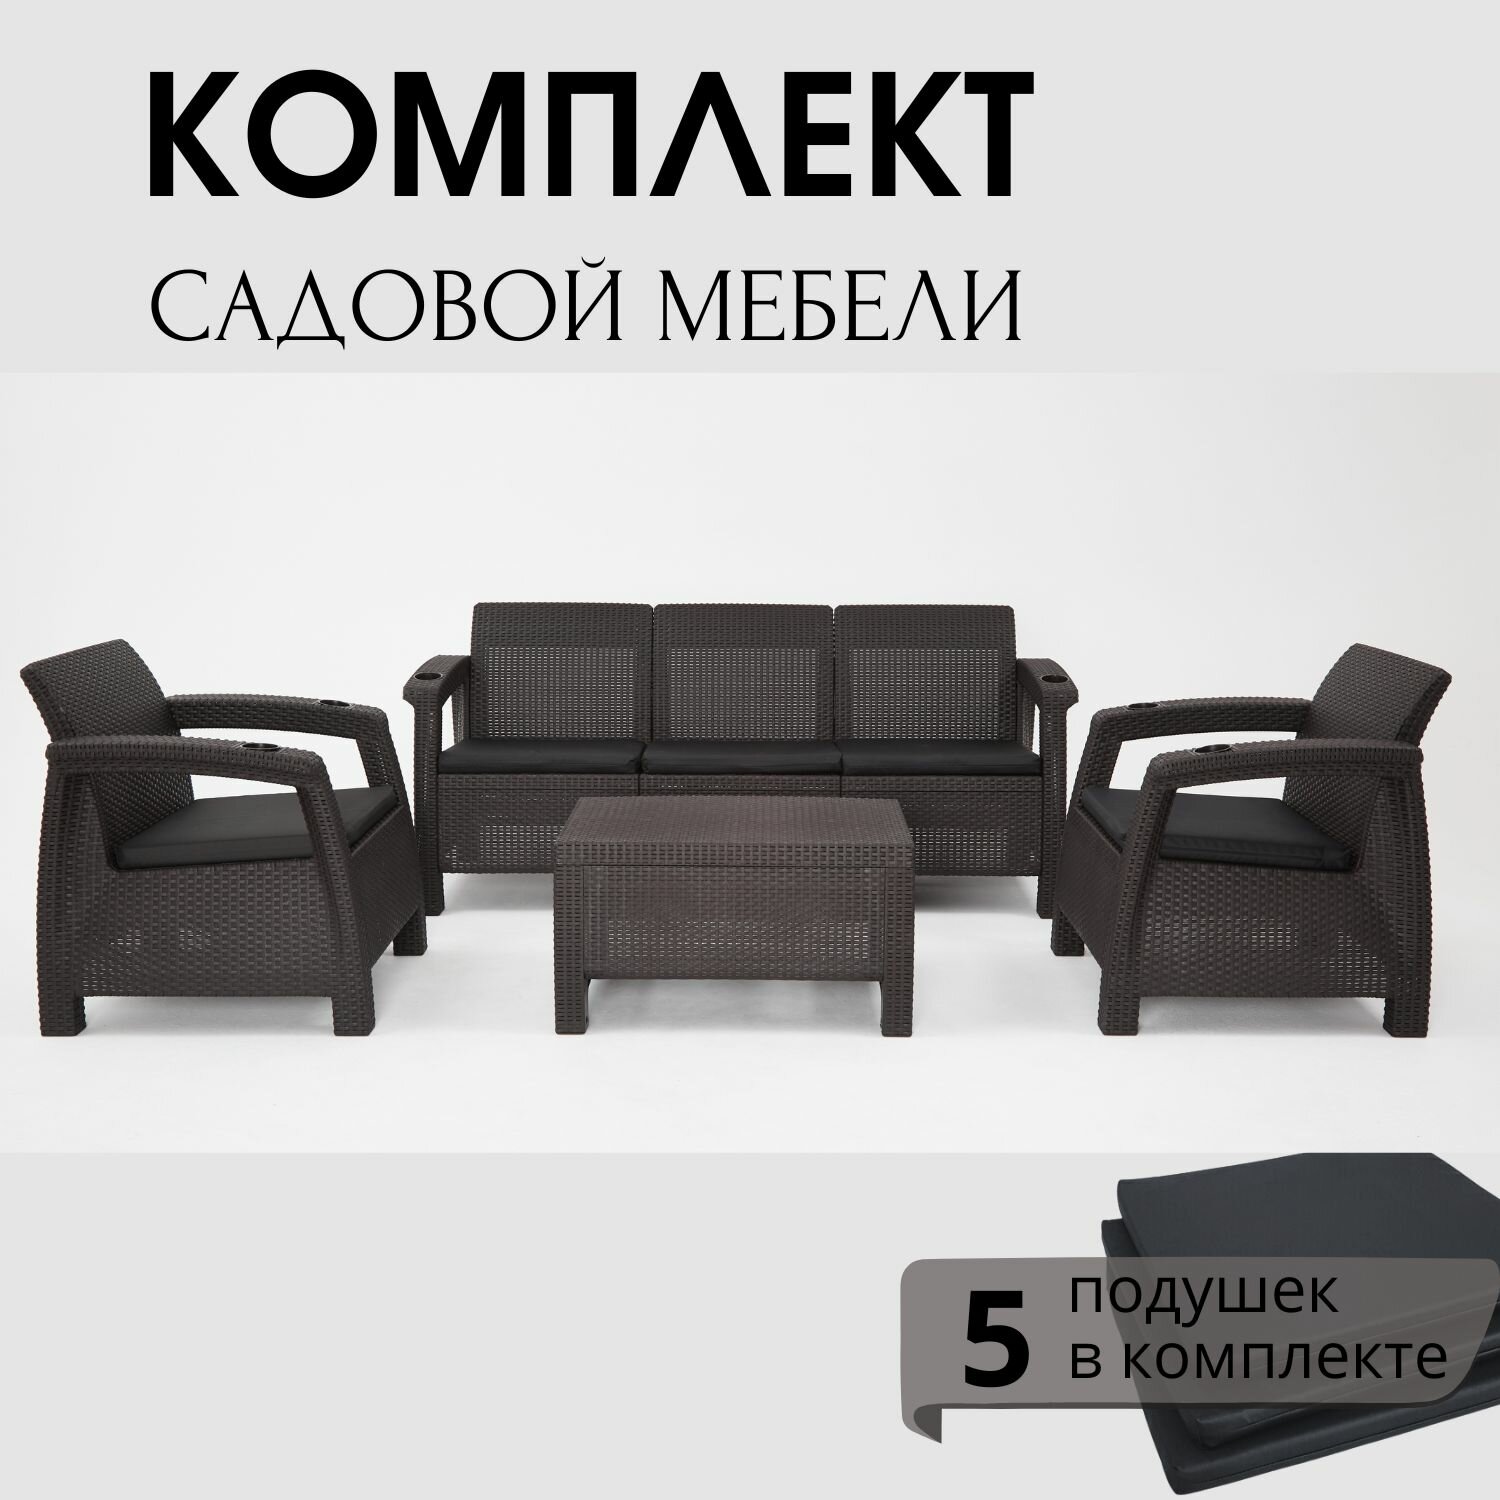 Комплект садовой мебели HomlyGreen Set 3+1+1+Кофейный столик+подушки серого цвета